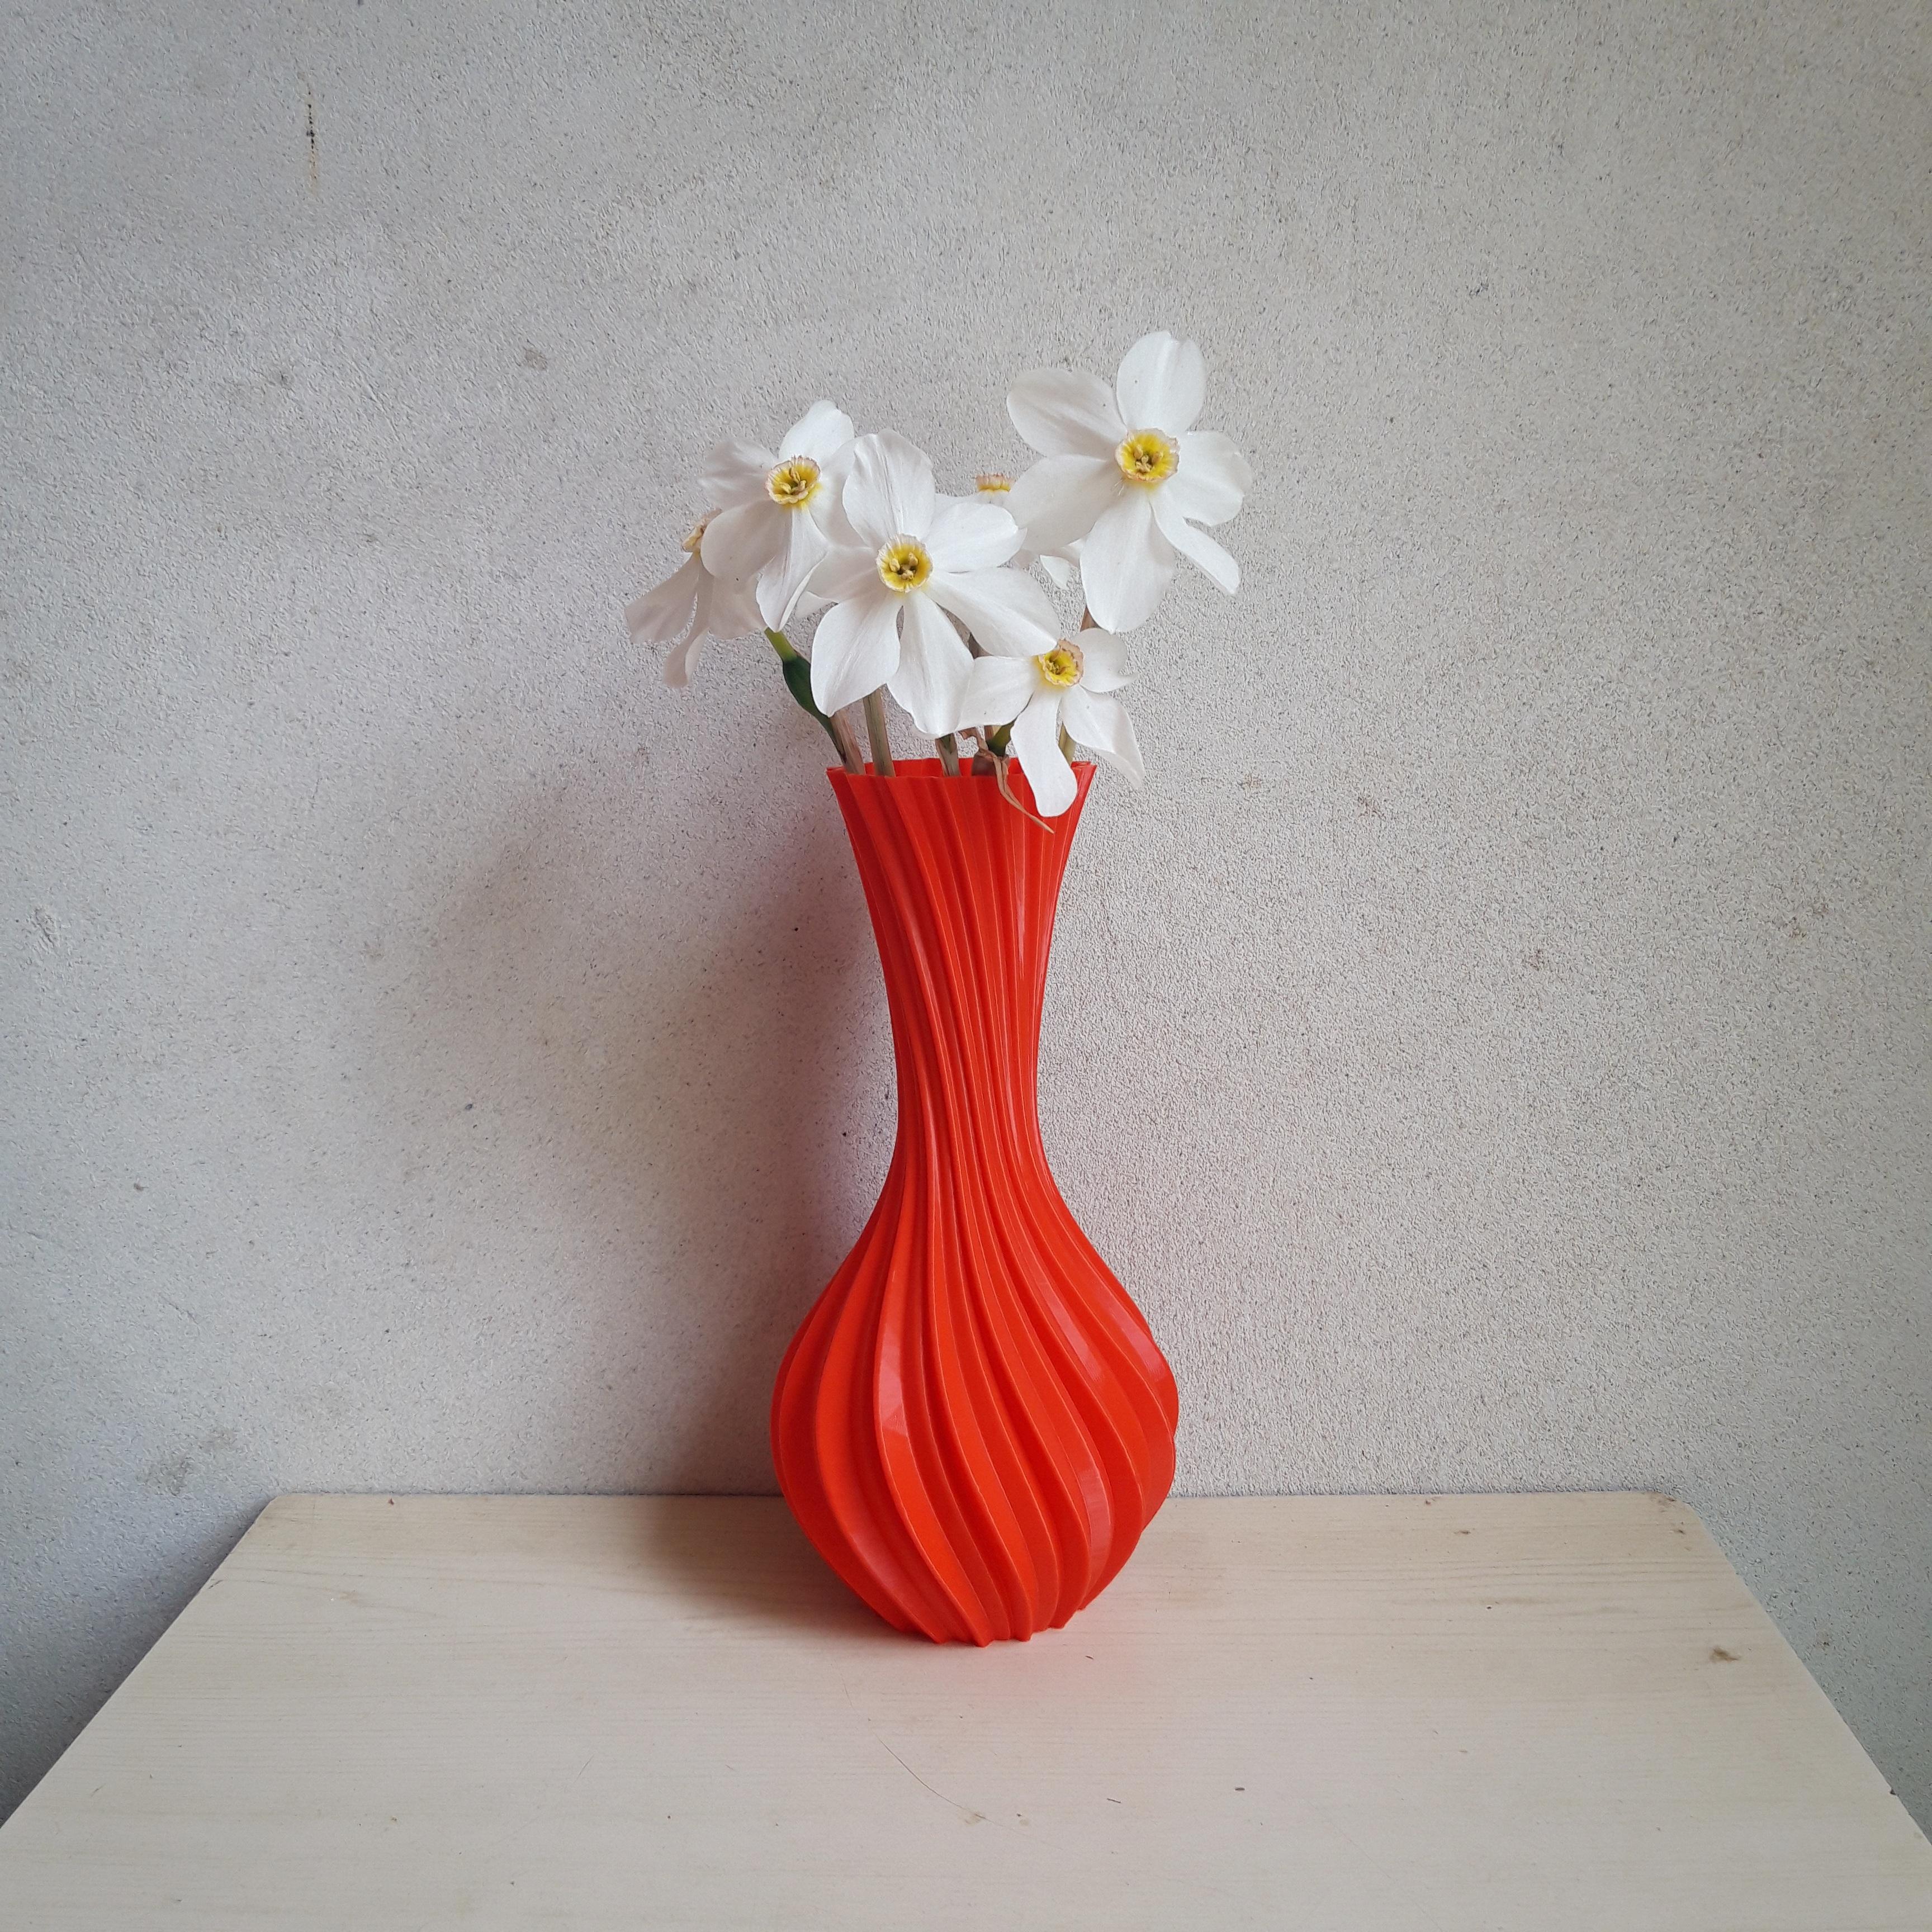 Suny vase 3d model